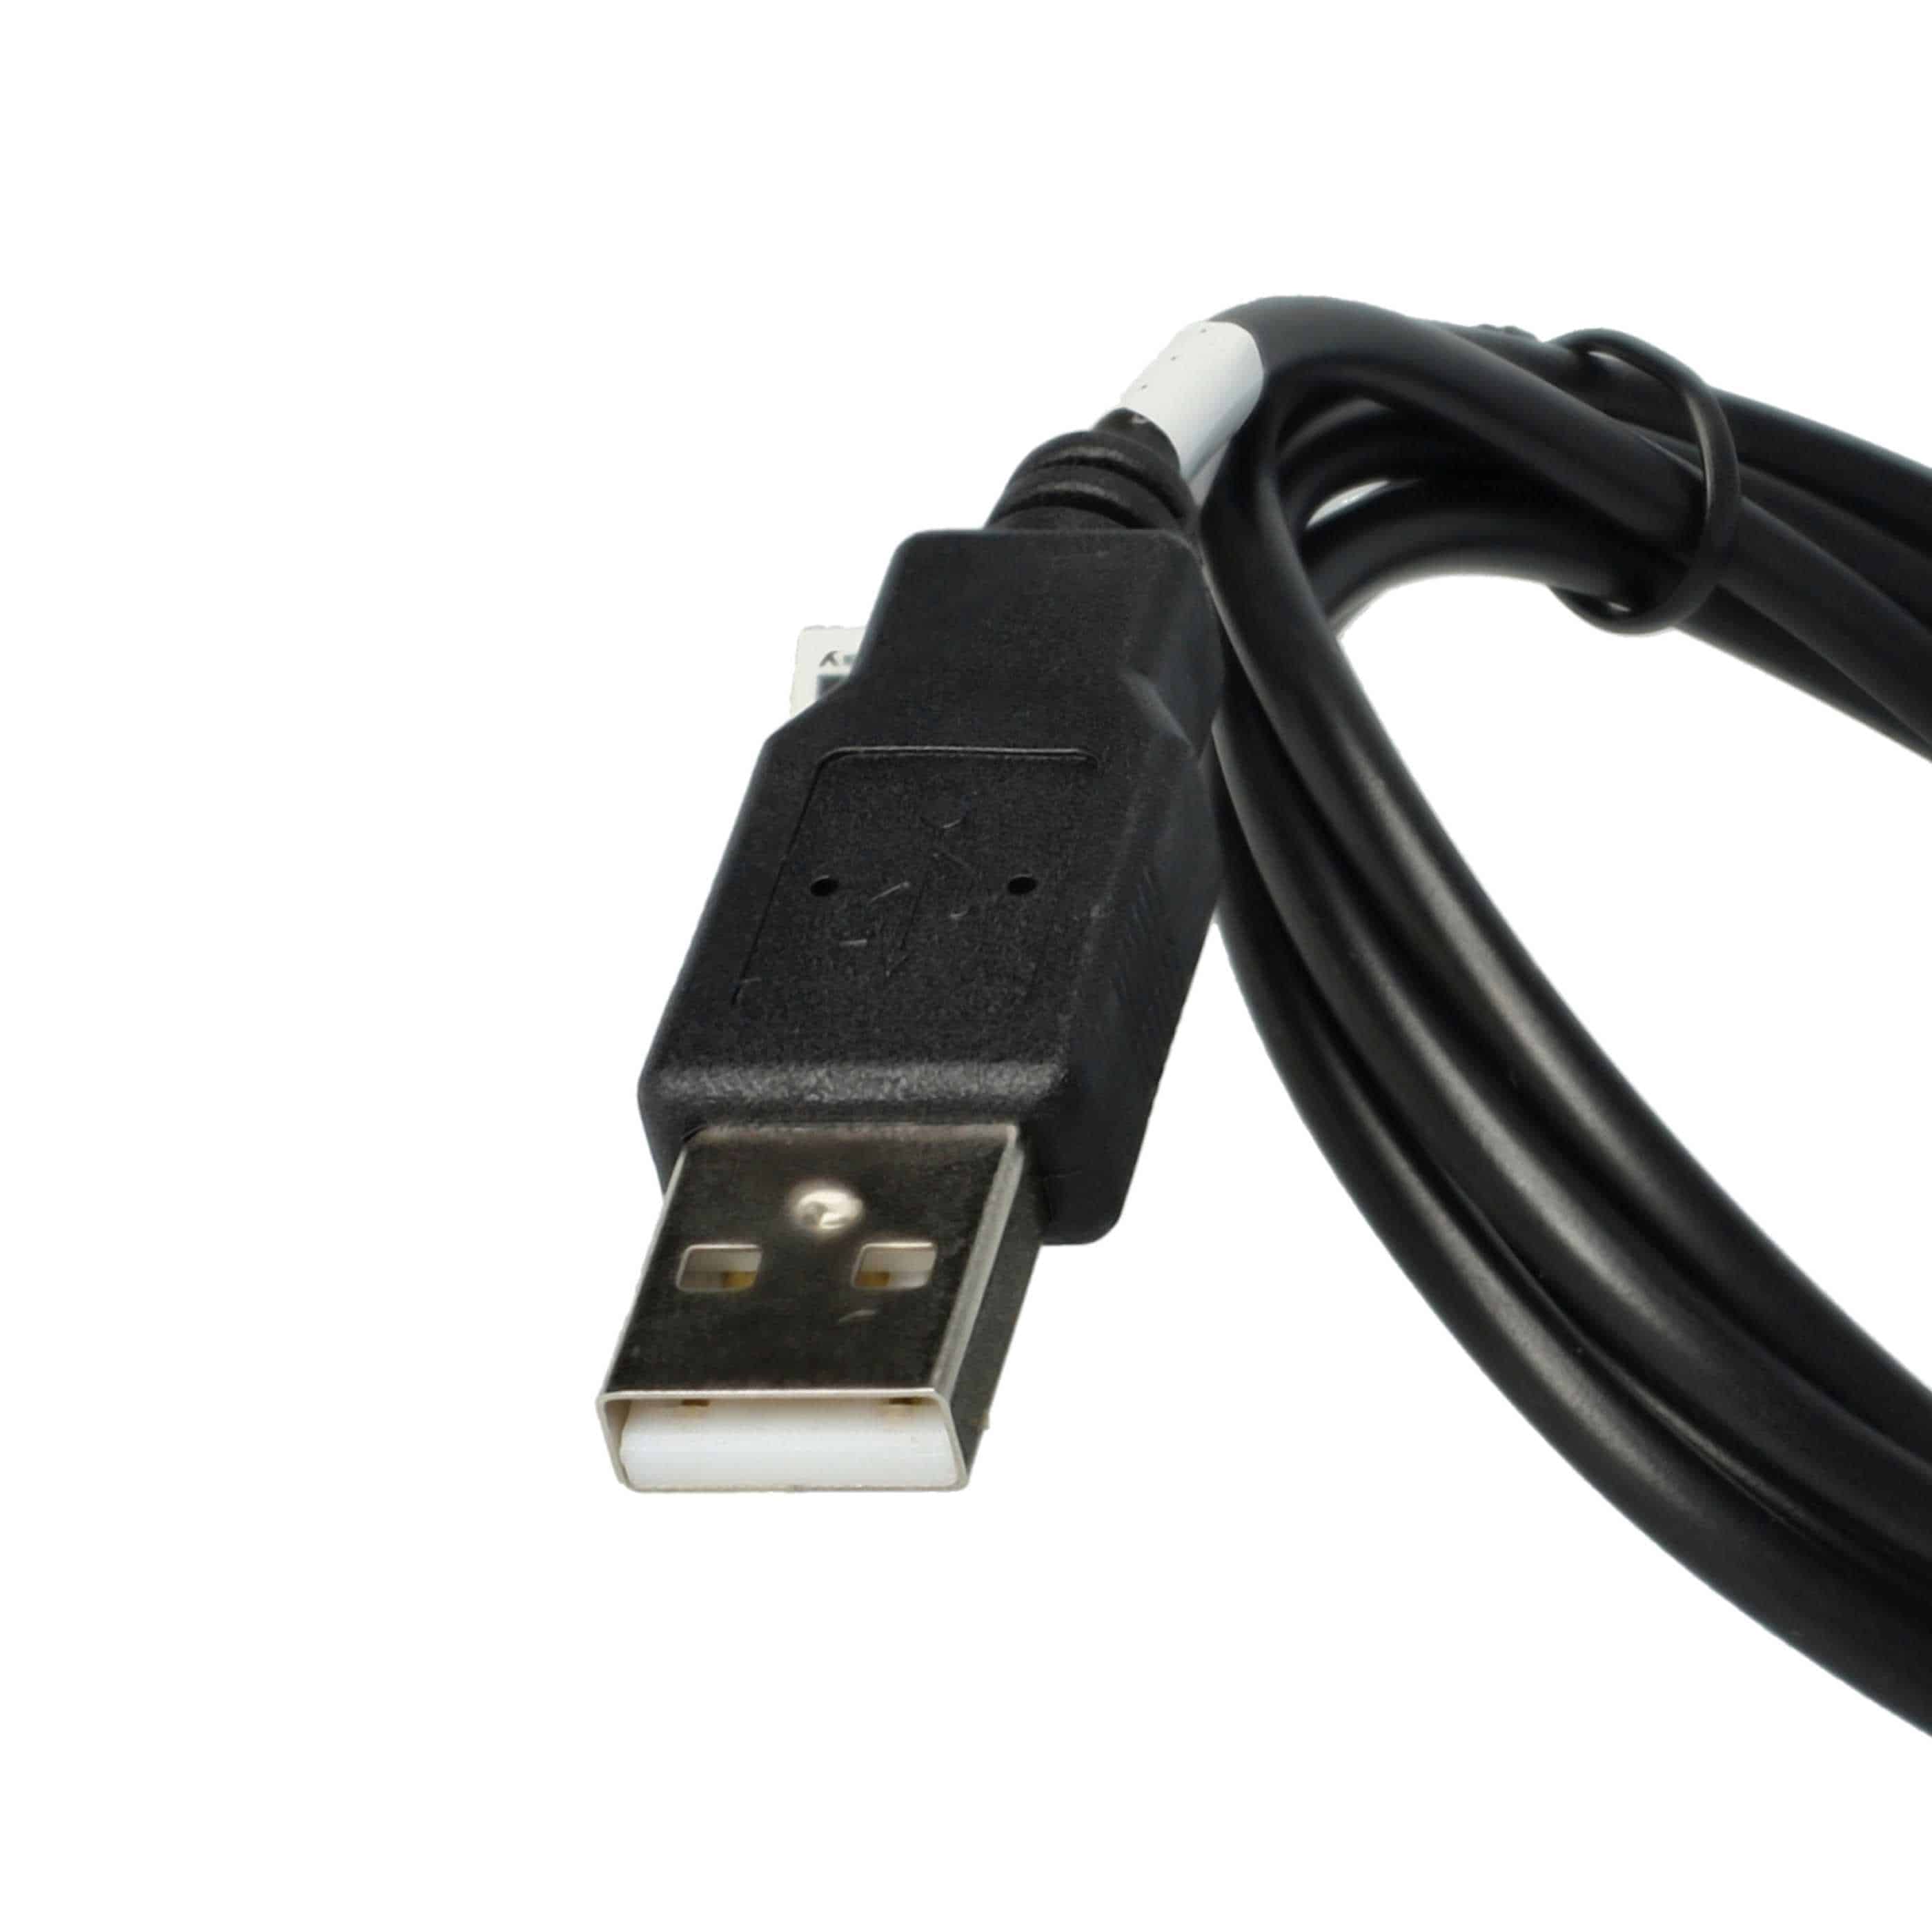 USB Datenkabel 2-in-1 Ladekabel passend für Mustek GPS Navi u.a.